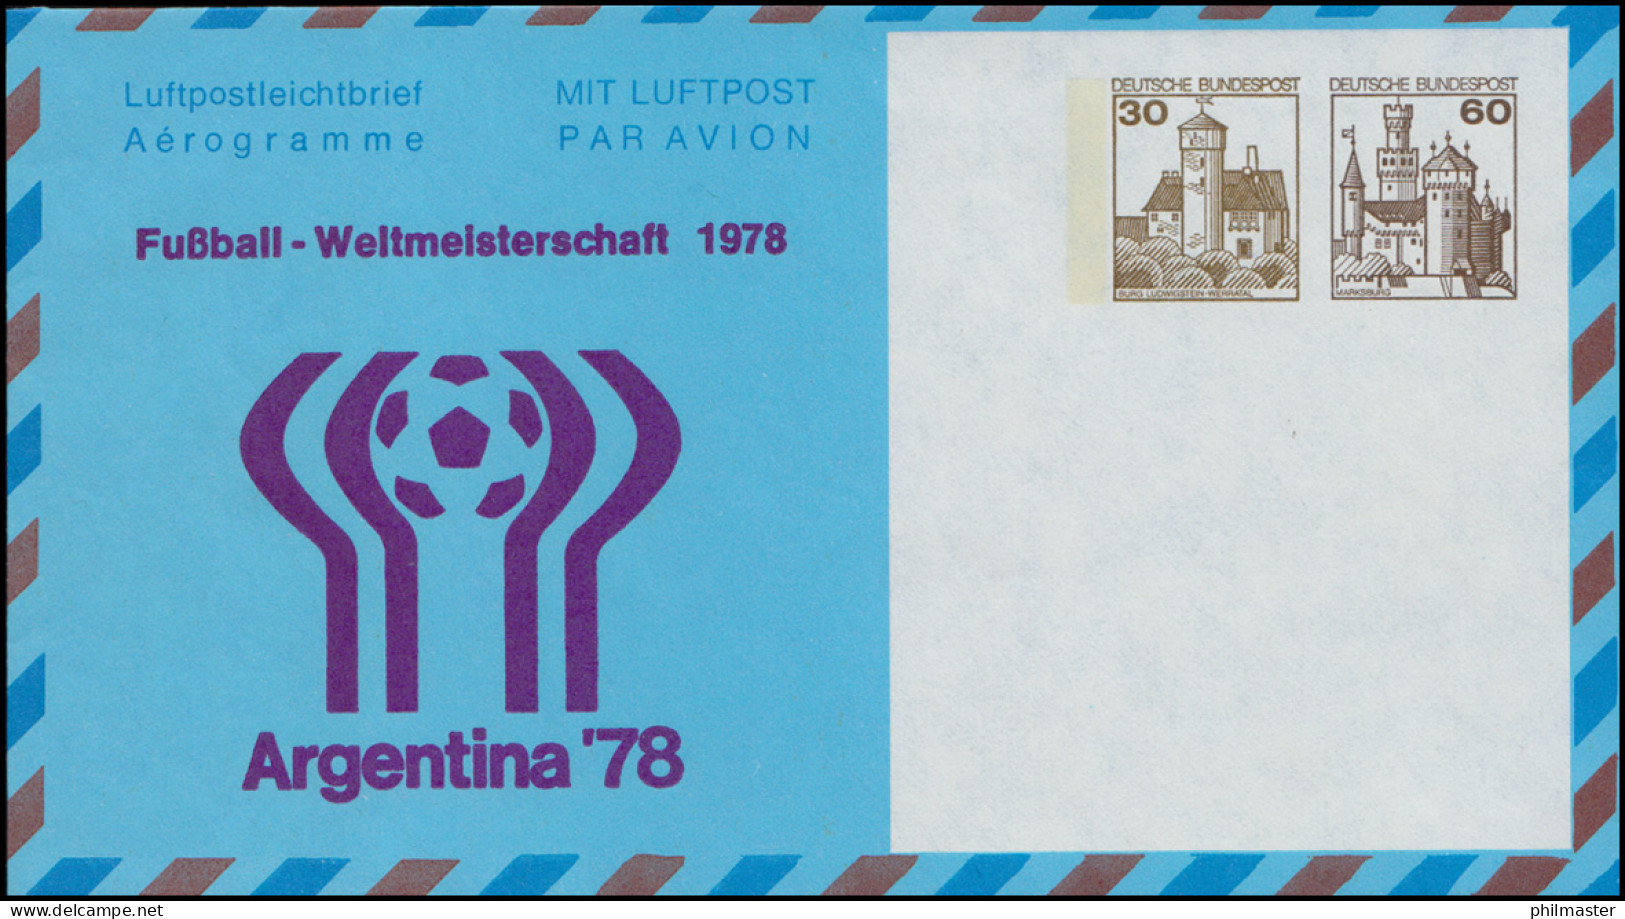 Privatfaltbrief / Aerogramm PF 30/2 Fußball-WM Argentina'78, Postfrisch  - Private Covers - Mint